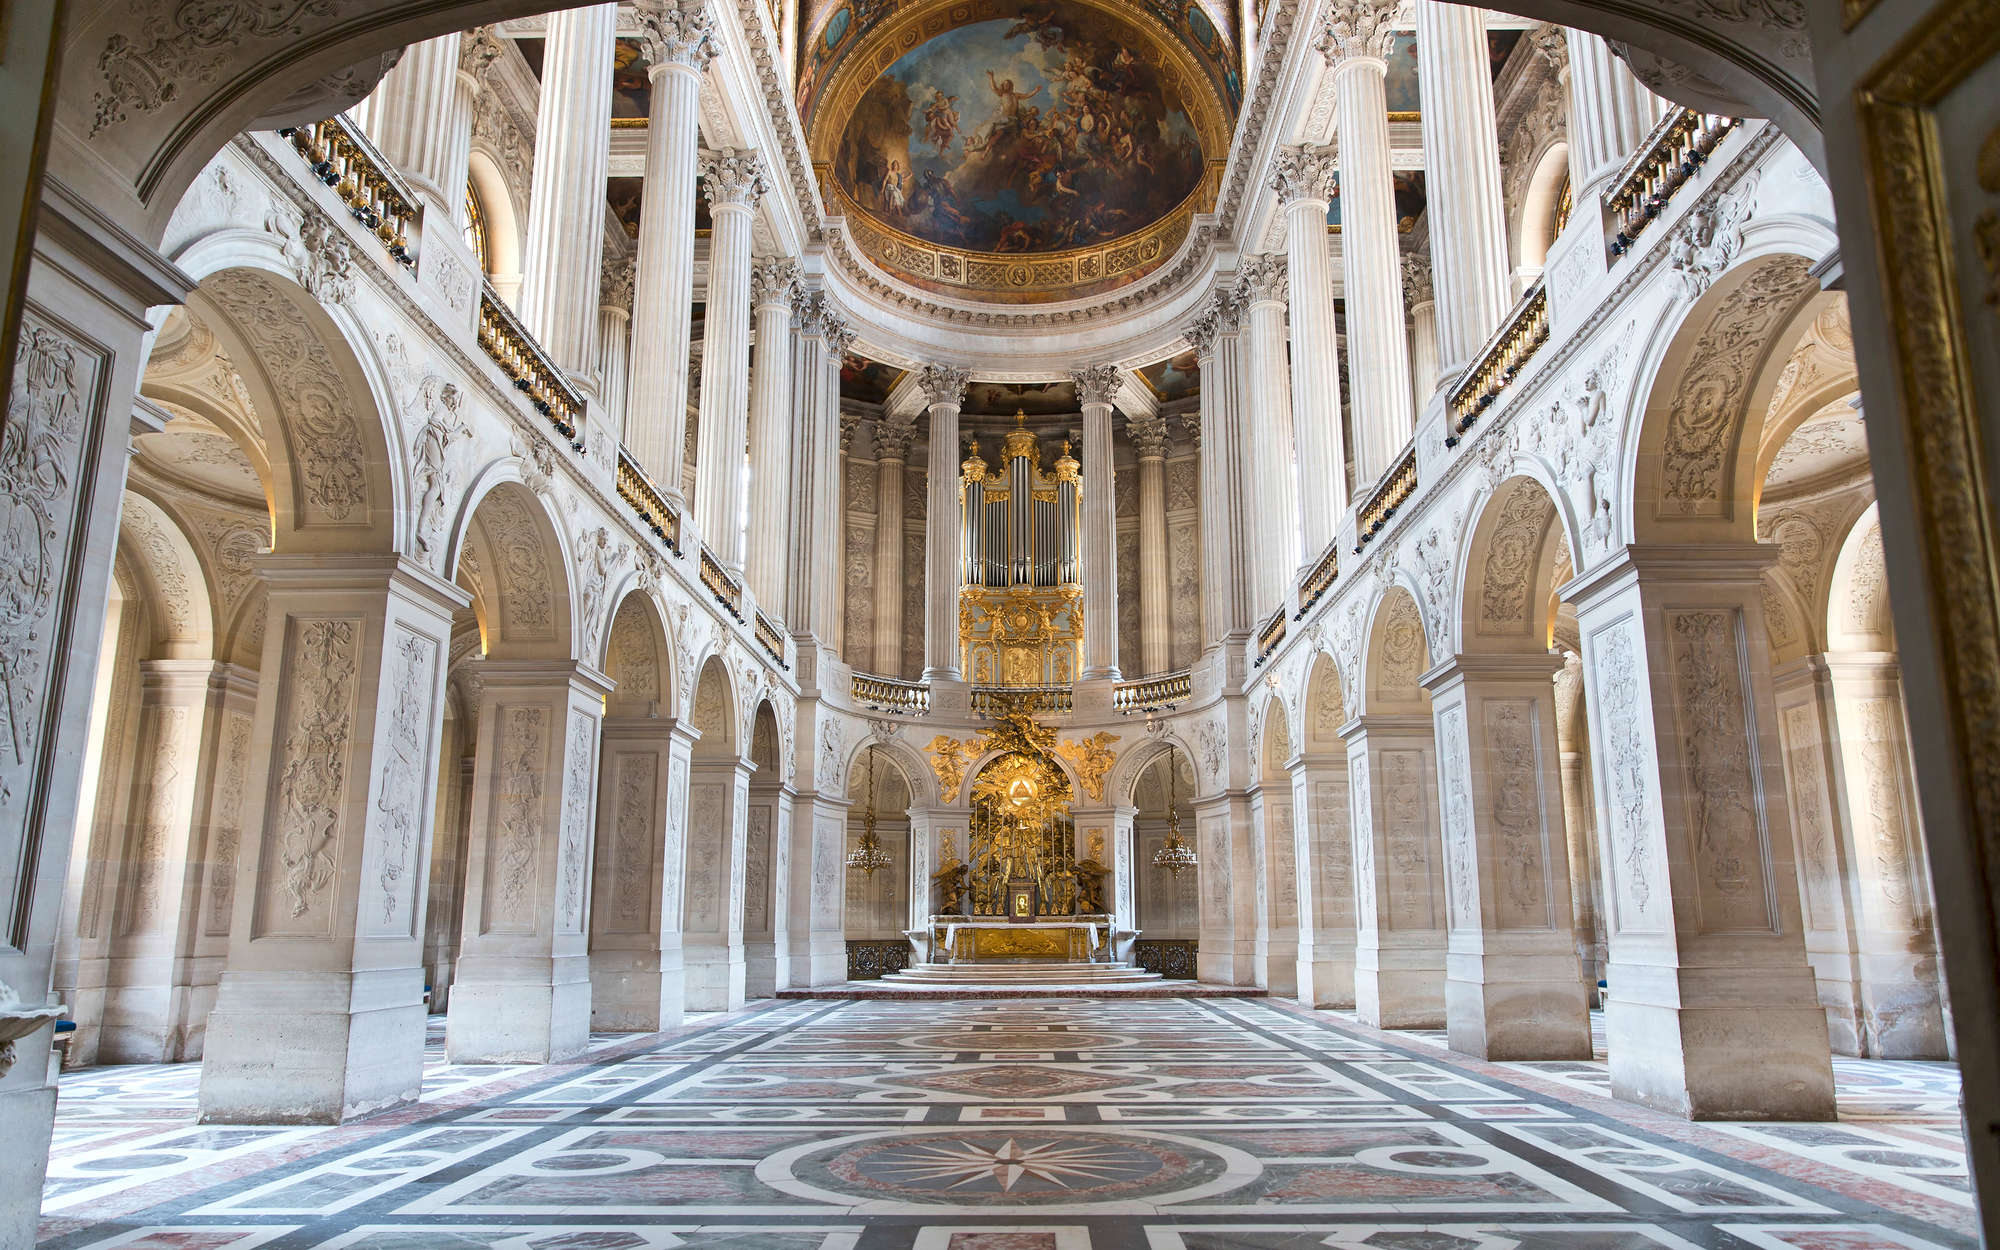             Barock Fototapete Schloss Versailles Saal – Mattes Glattvlies
        